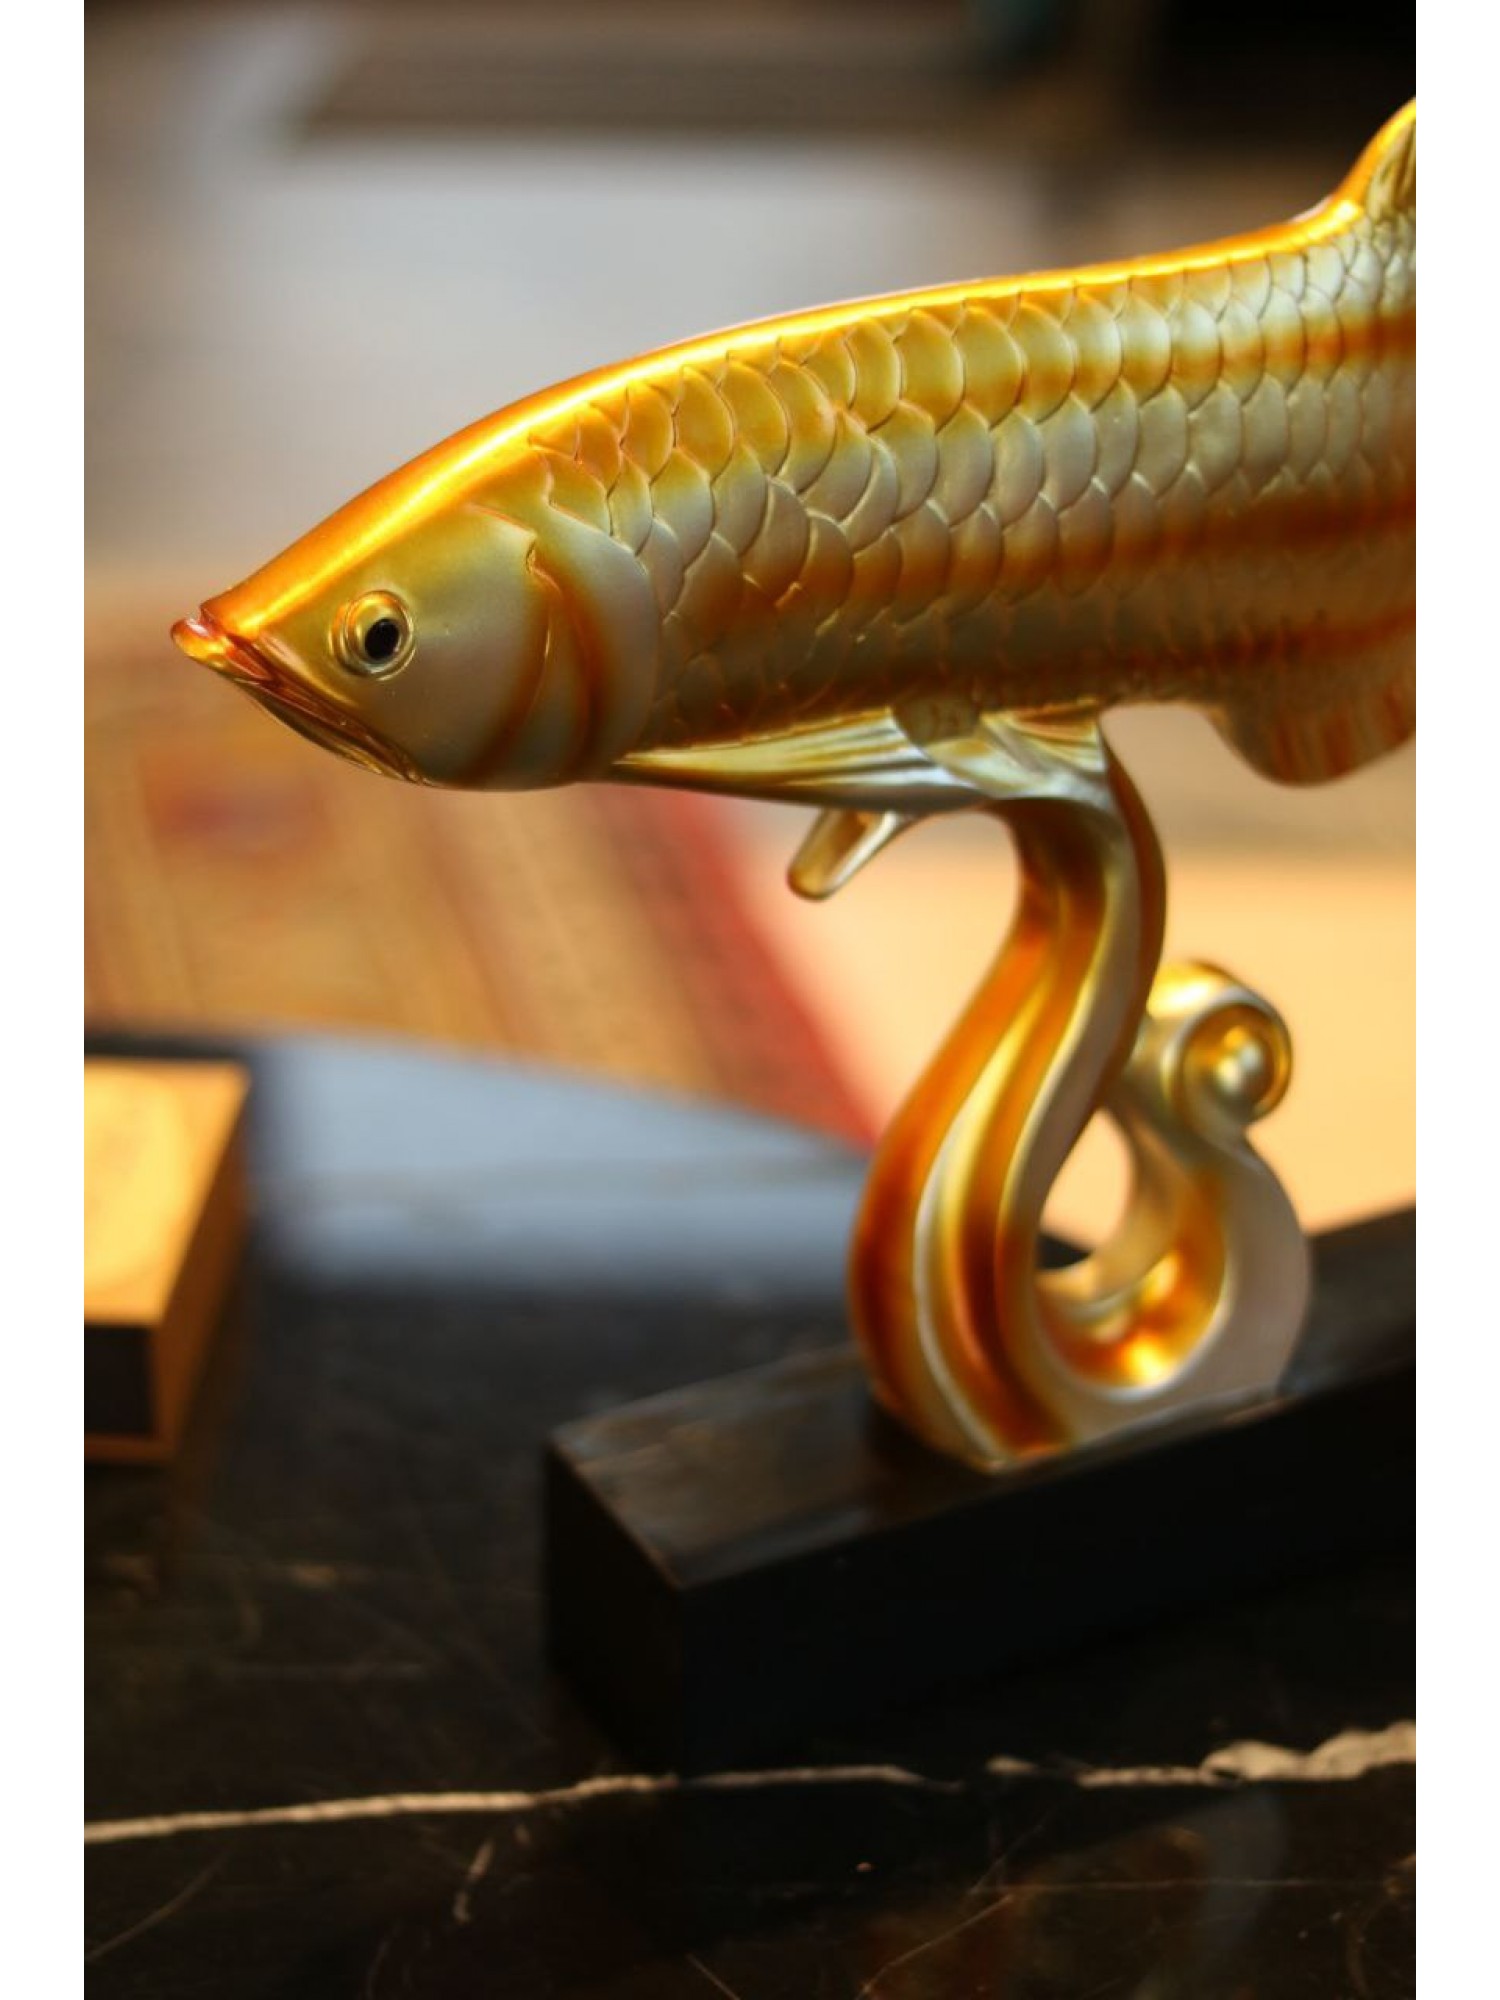 Статуэтка "Арована рыба миллионеров" на волне (желтая) привлекает большое богатство!